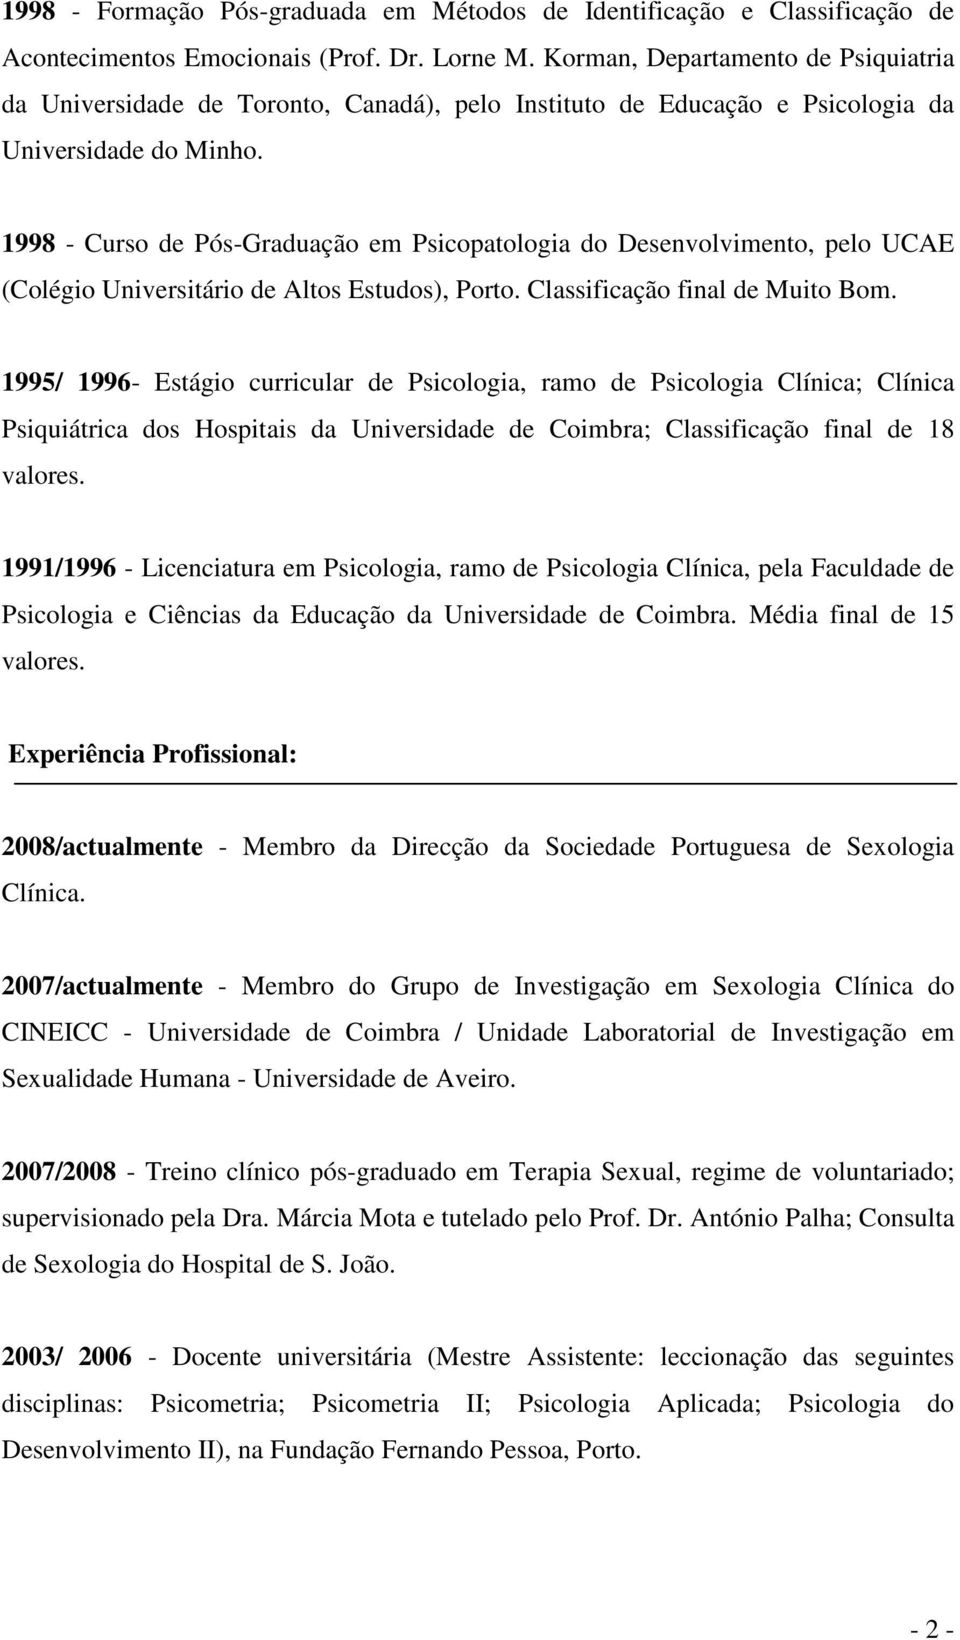 1998 - Curso de Pós-Graduação em Psicopatologia do Desenvolvimento, pelo UCAE (Colégio Universitário de Altos Estudos), Porto. Classificação final de Muito Bom.